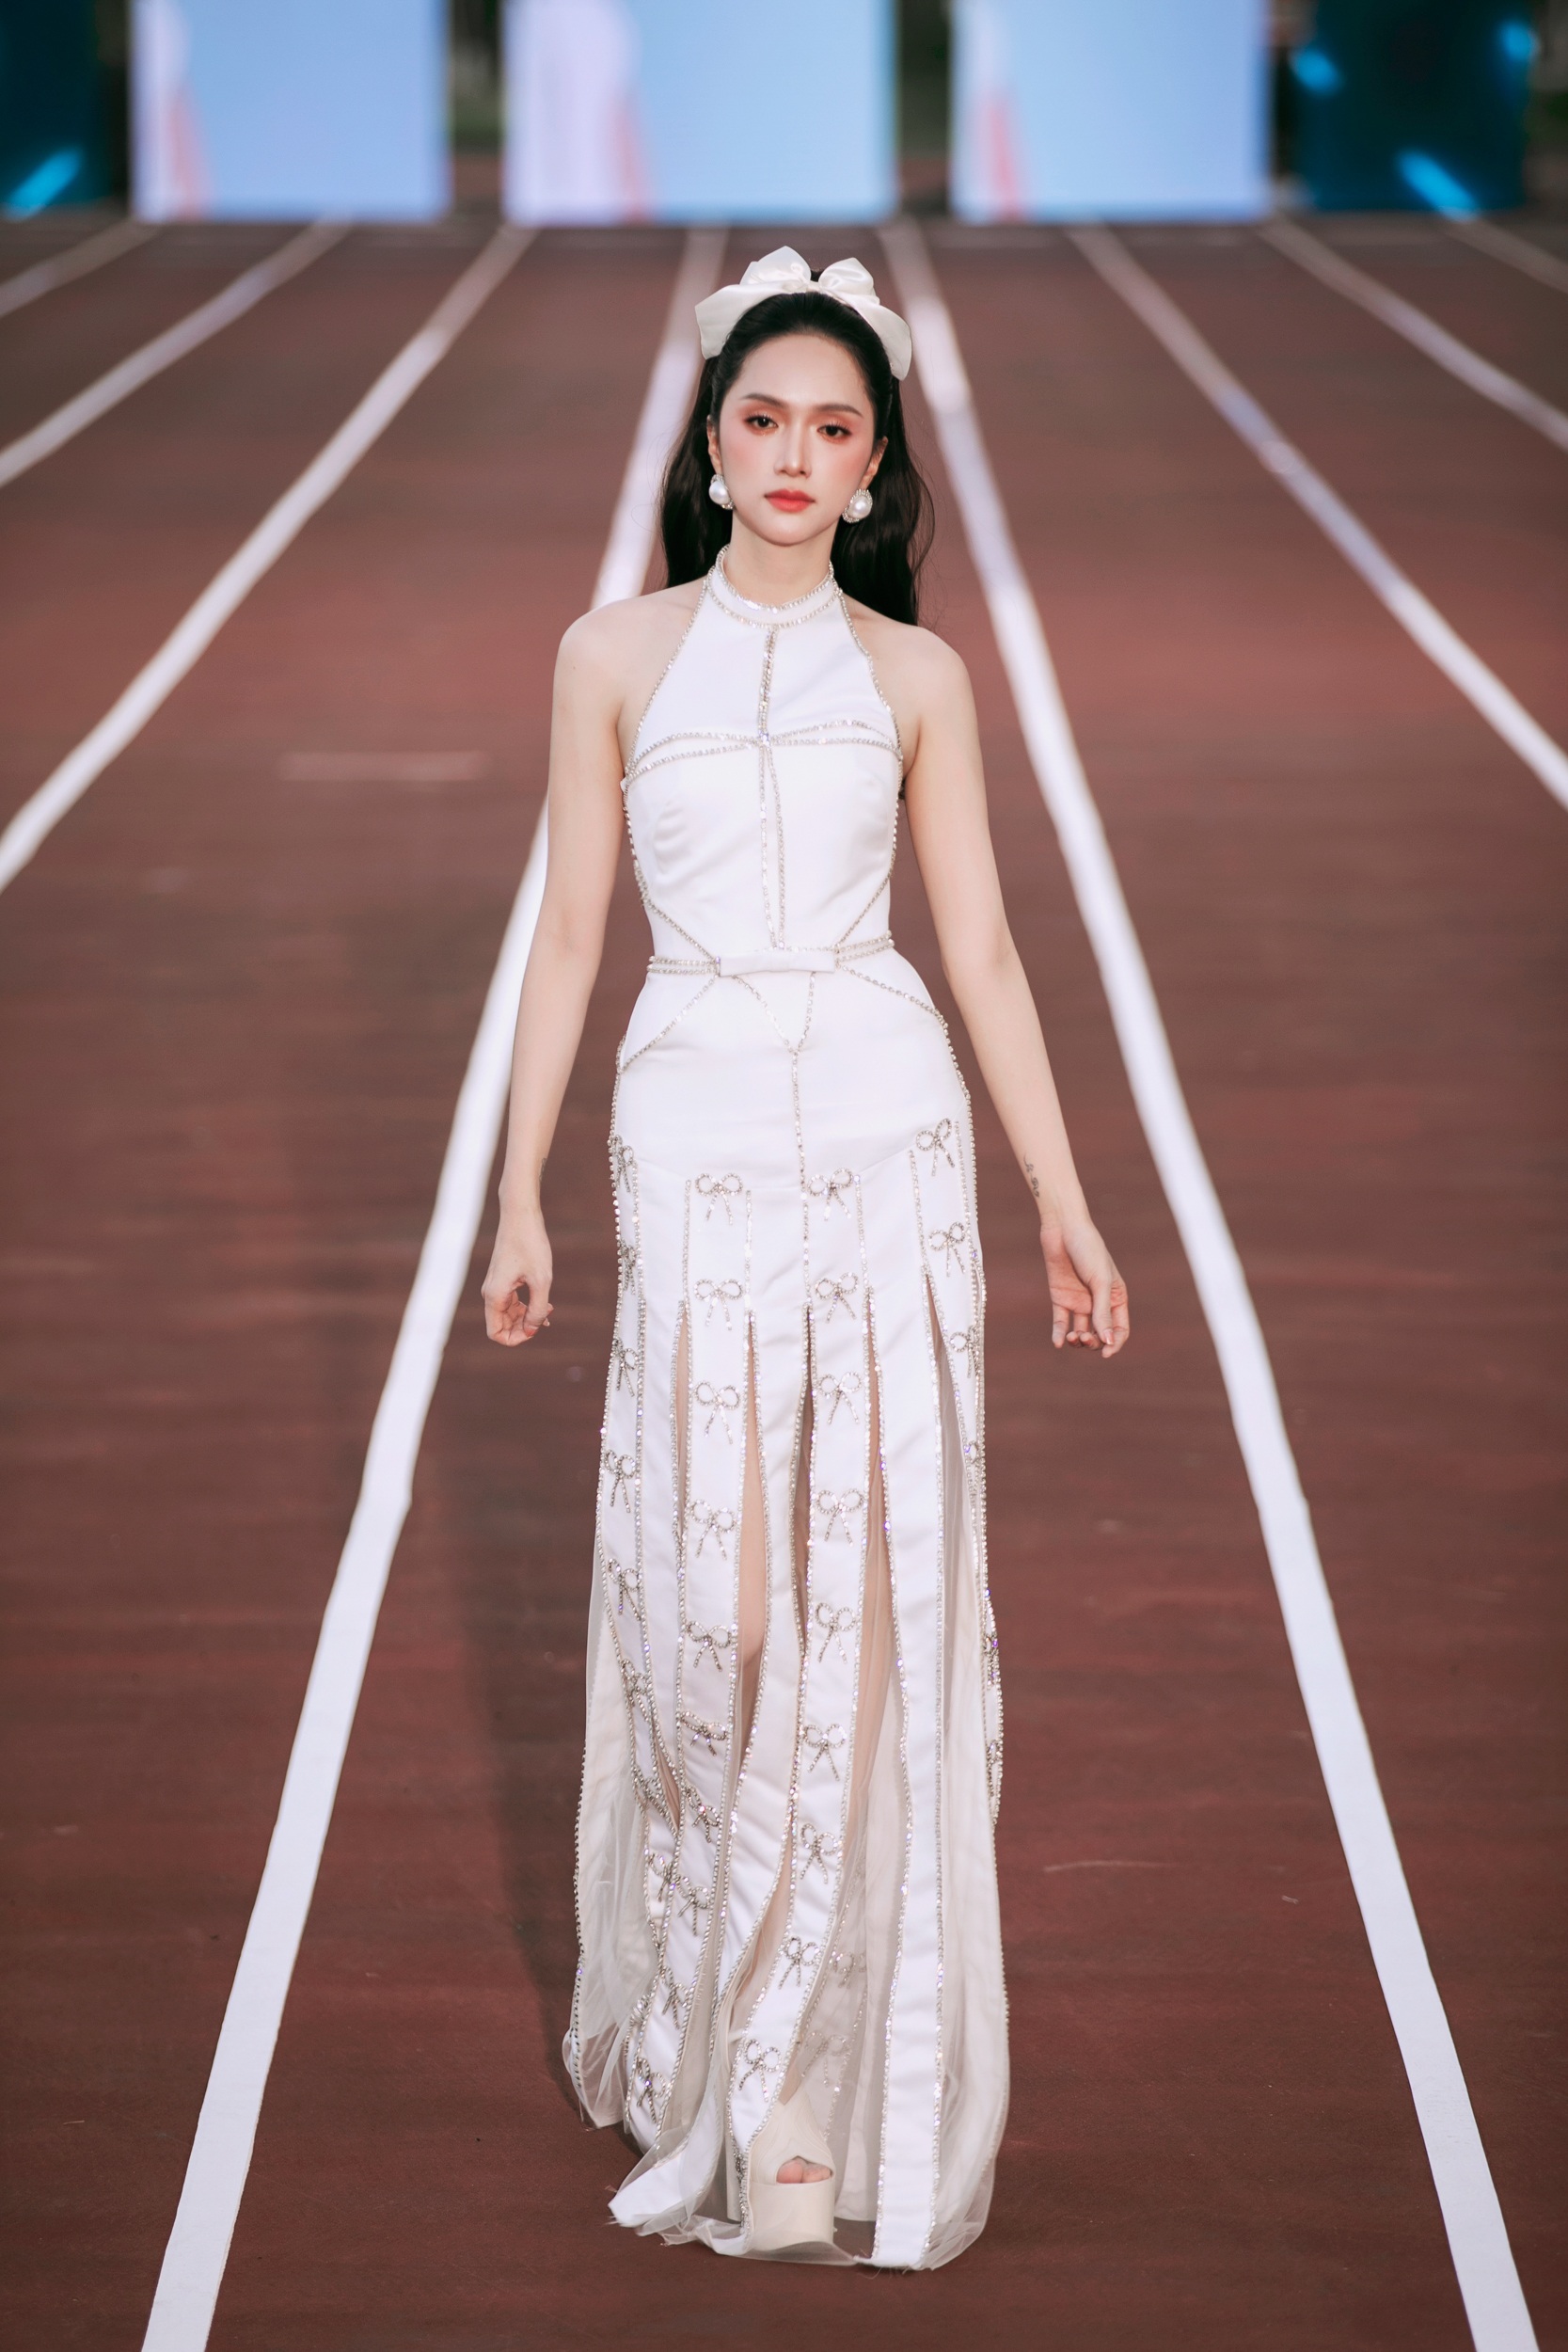 Sau thời gian tập trung cho các show thực tế, Hương Giang gây chú ý khi trở lại sàn catwalk trong show diễn hôm 11/6 trên Sân vận động Gia Định (TPHCM). Cô được chọn làm vedette, trình diễn bộ sưu tập "Run" của NTK Ngô Mạnh Đông Đông.